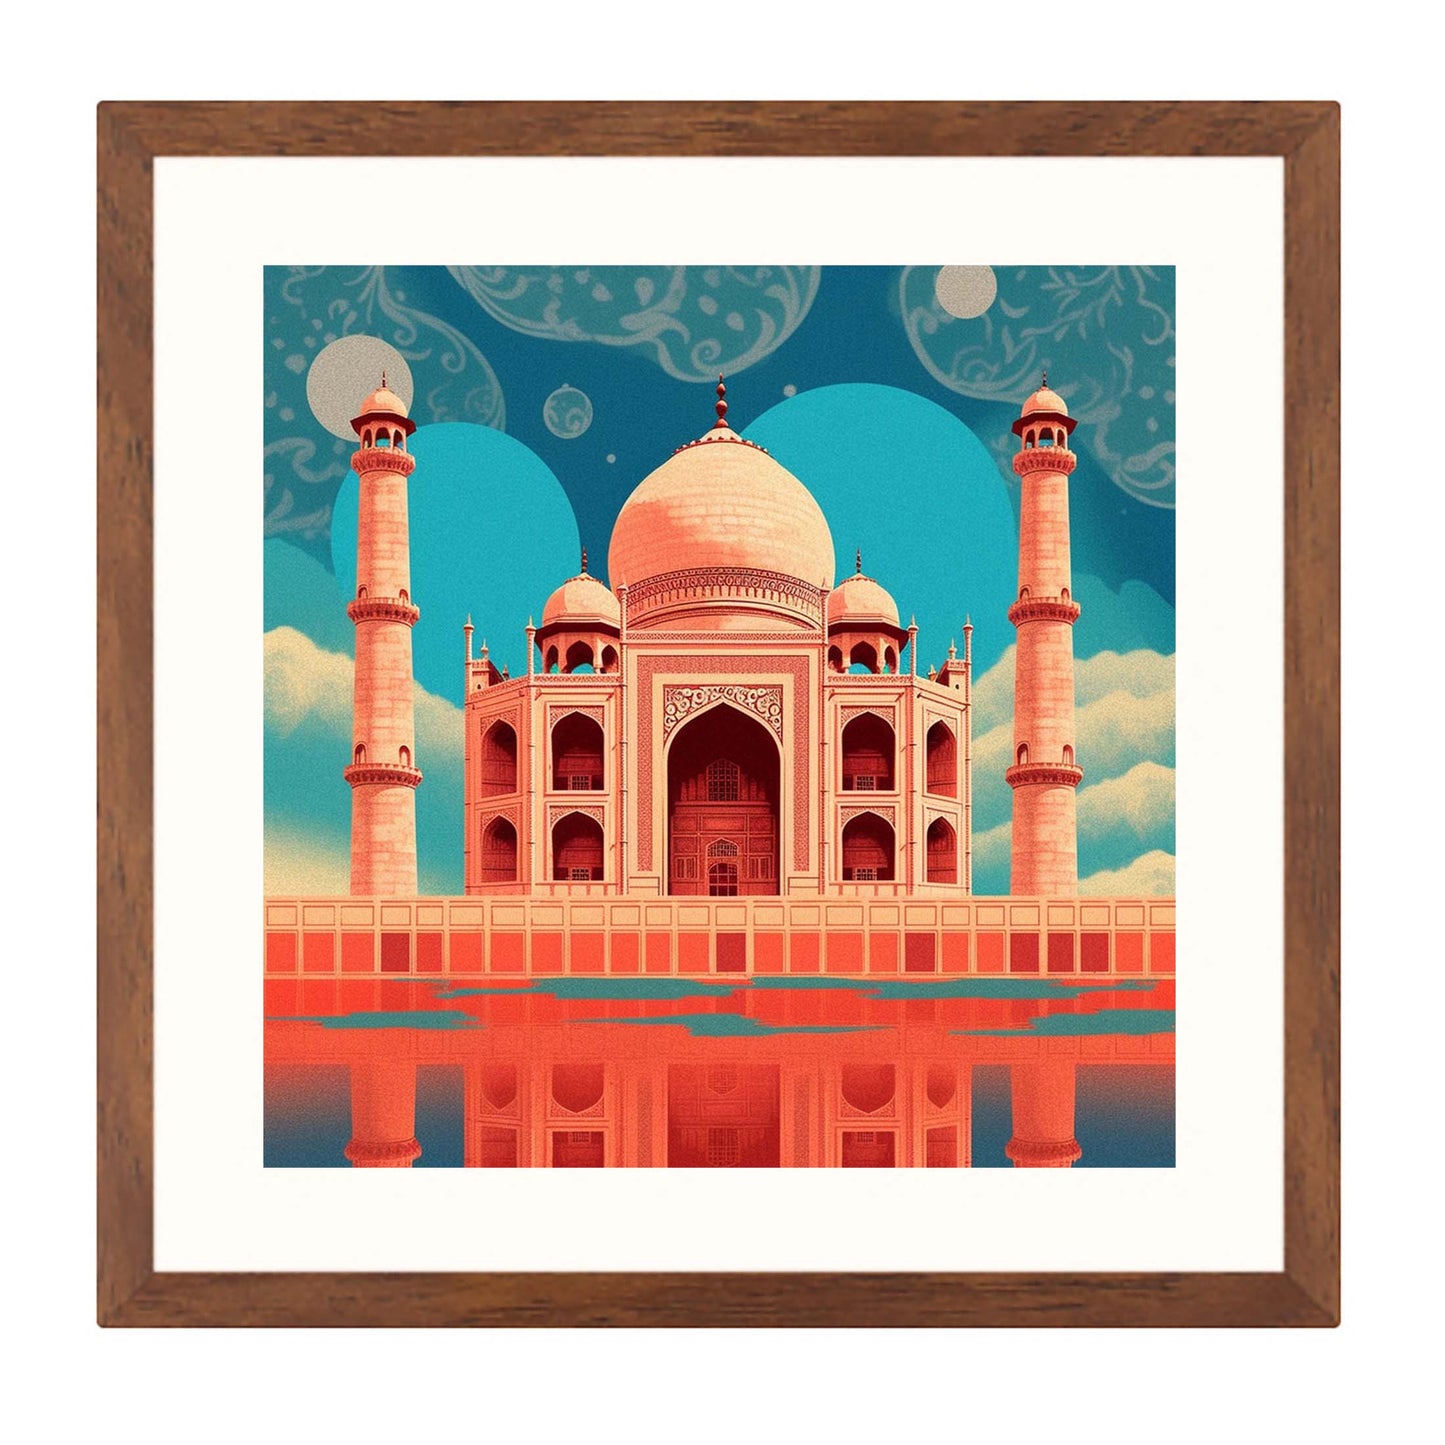 Taj Mahal - Wandbild in der Stilrichtung Urban Jungle